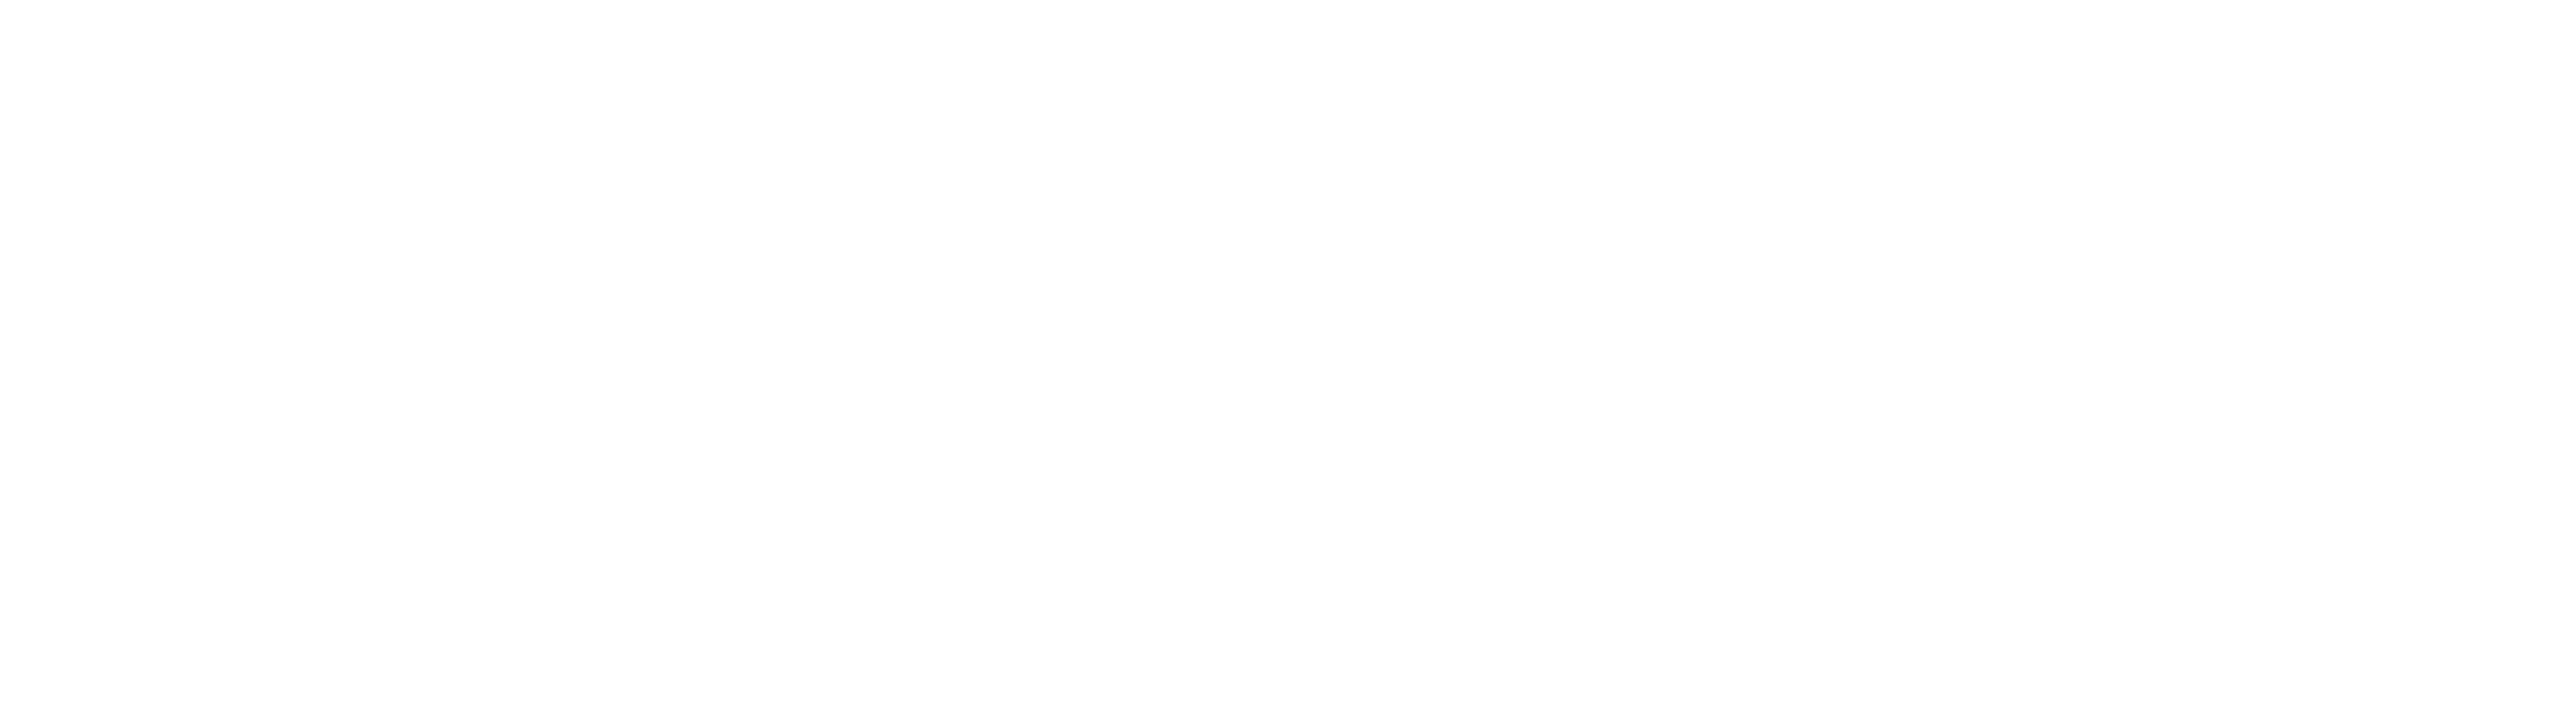 Header Asker Webdesign logo for mobile devices